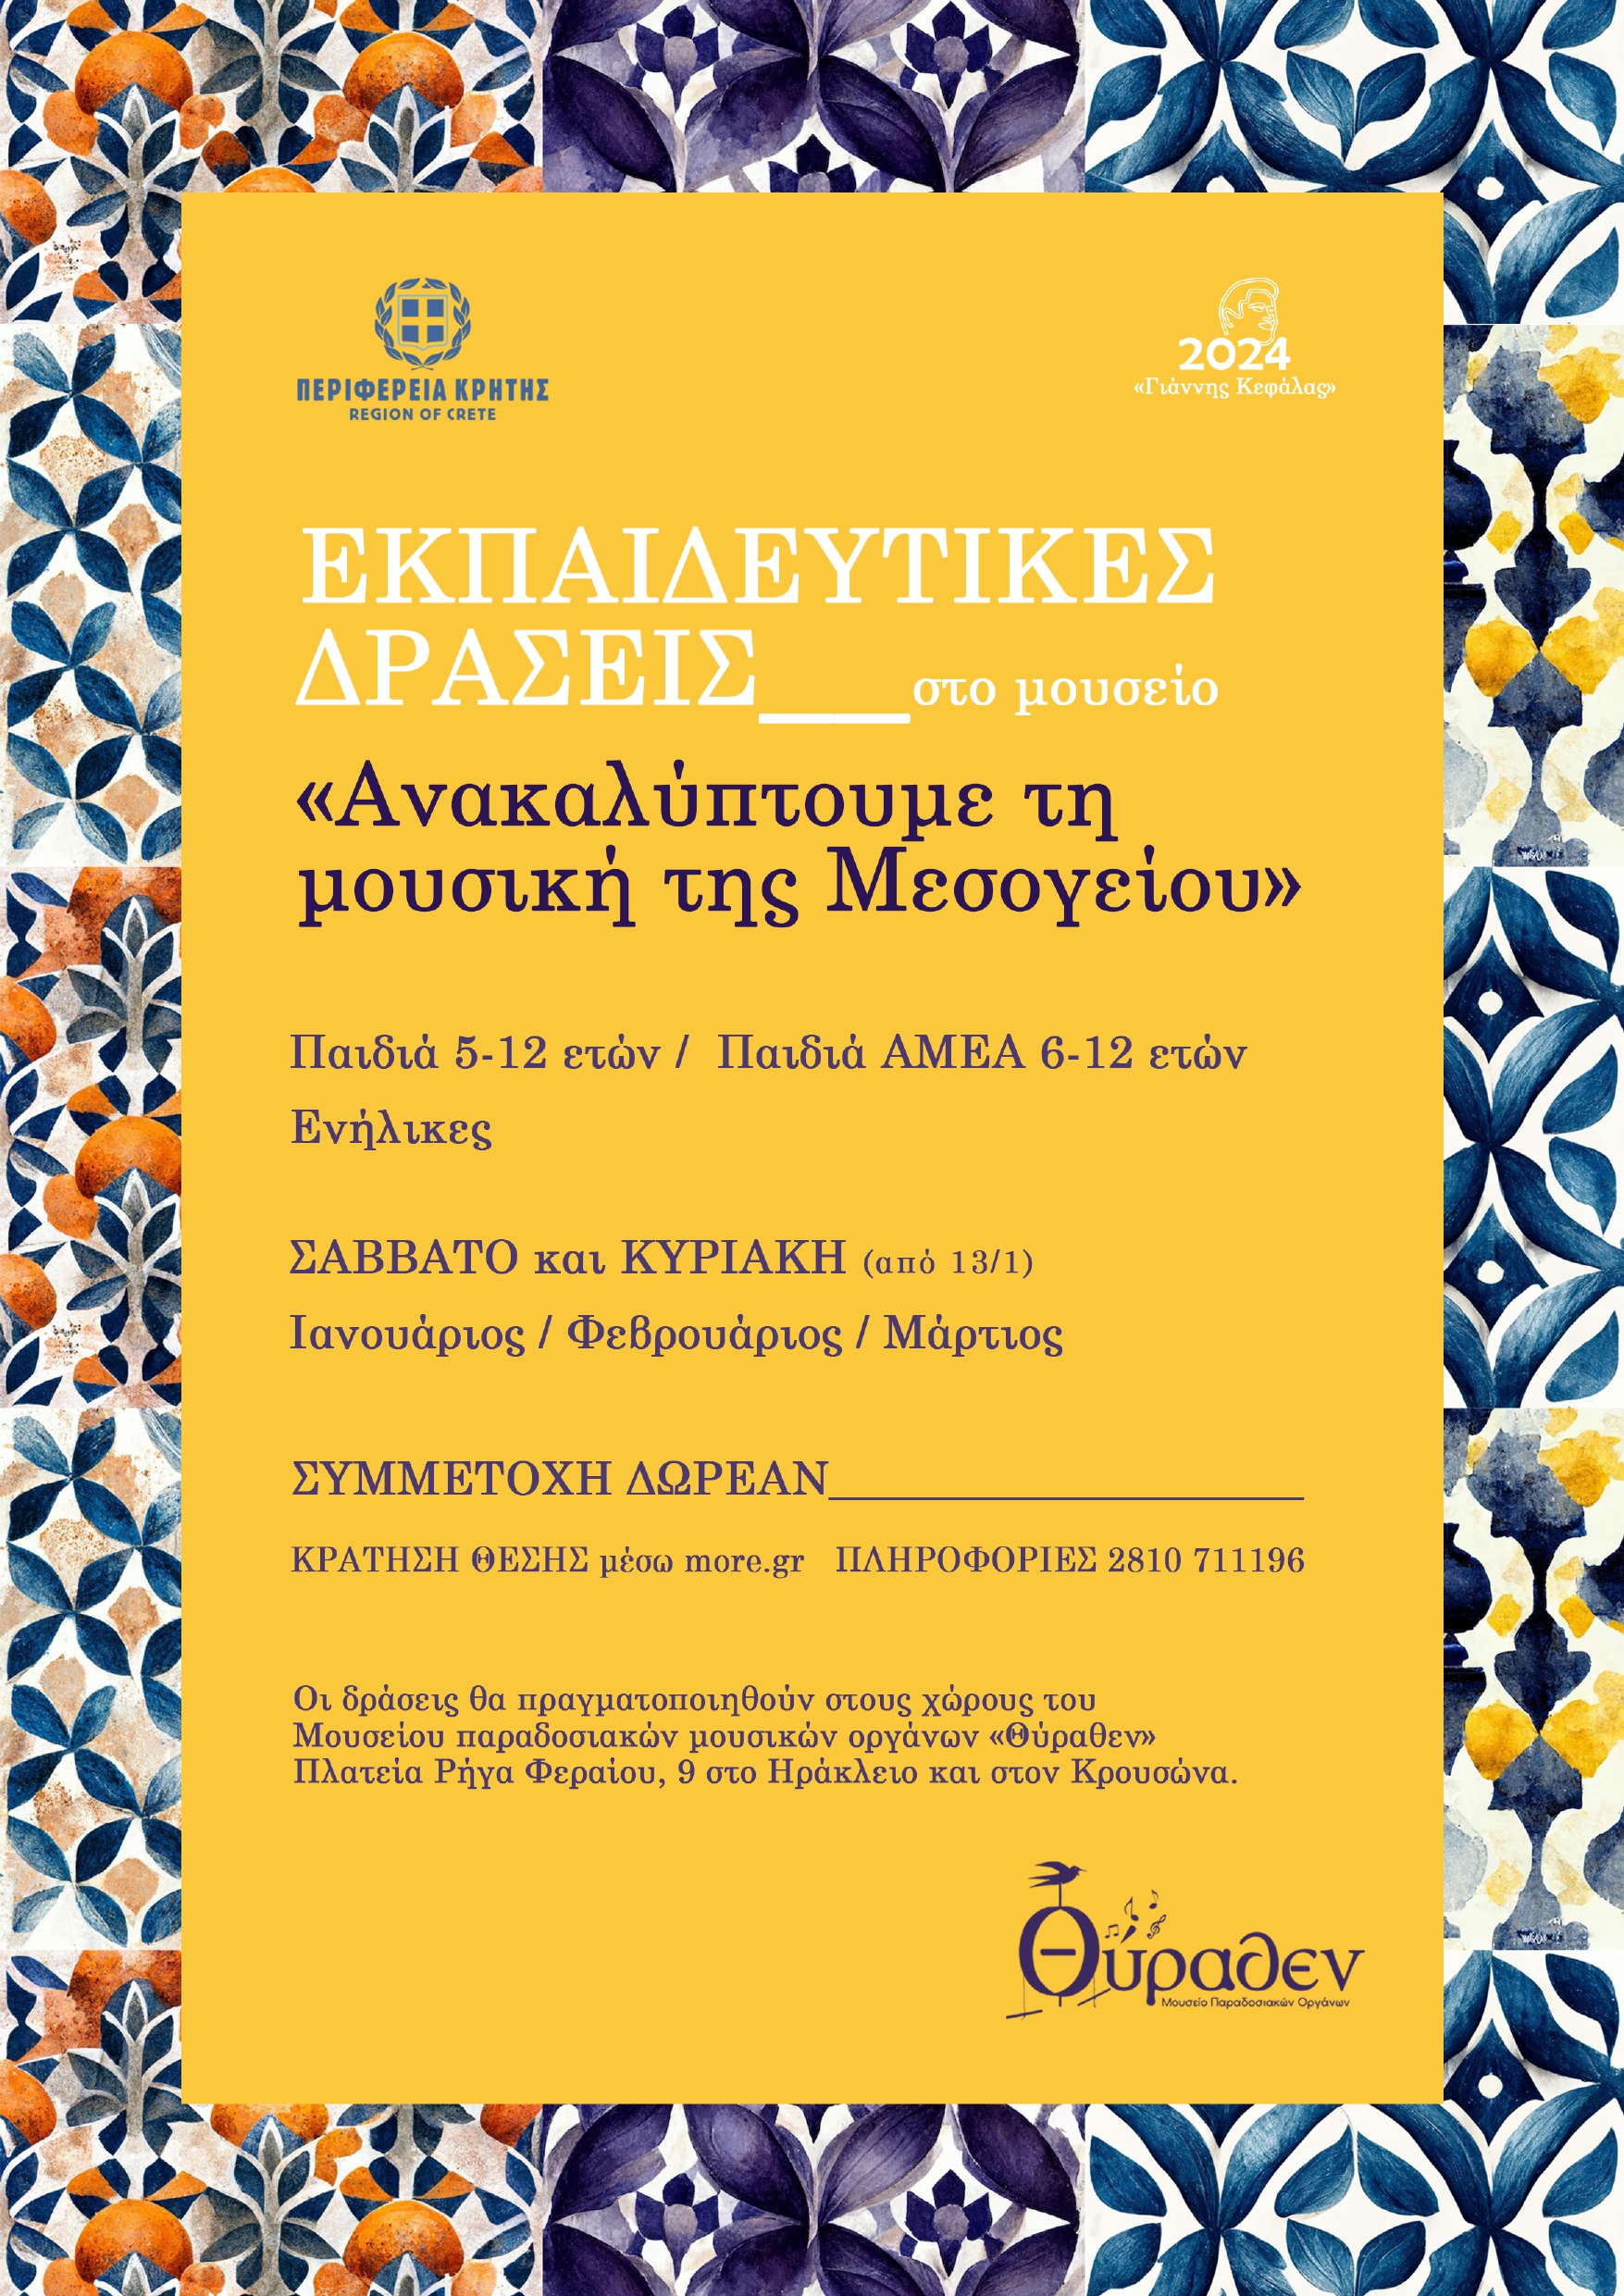 Εκπαιδευτικές δράσεις για την προαγωγή, διάδοση και διάσωση της μουσικής της Μεσογείου με την στήριξη της Περιφέρειας Κρήτης - Crete.gov.gr